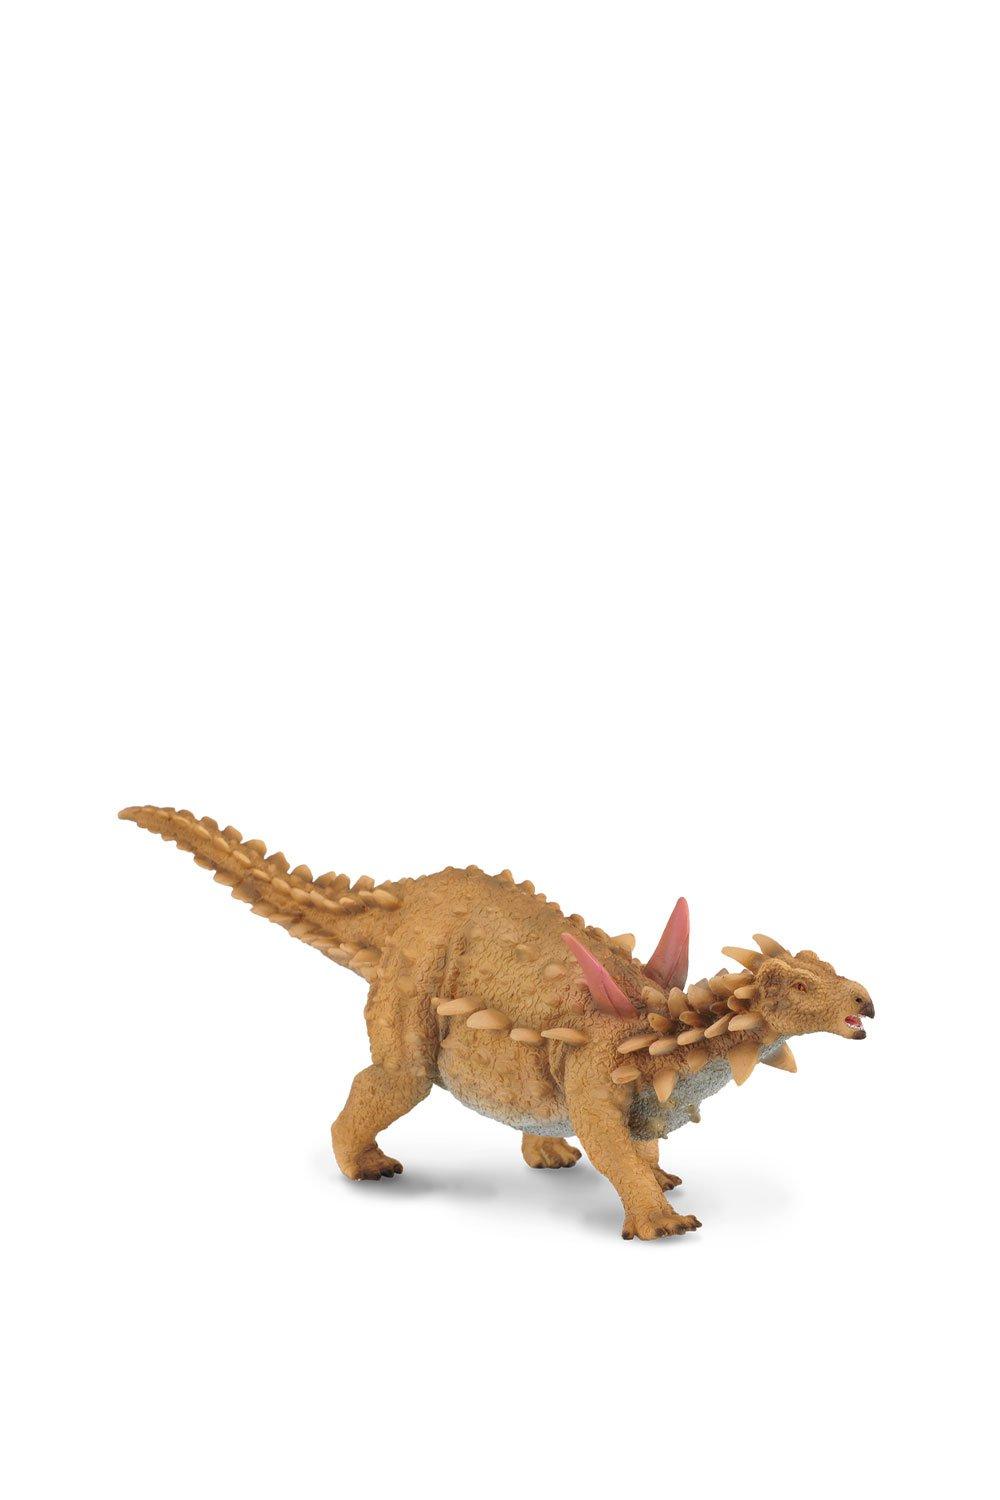 Scelidosaurus Dinosaur Toy